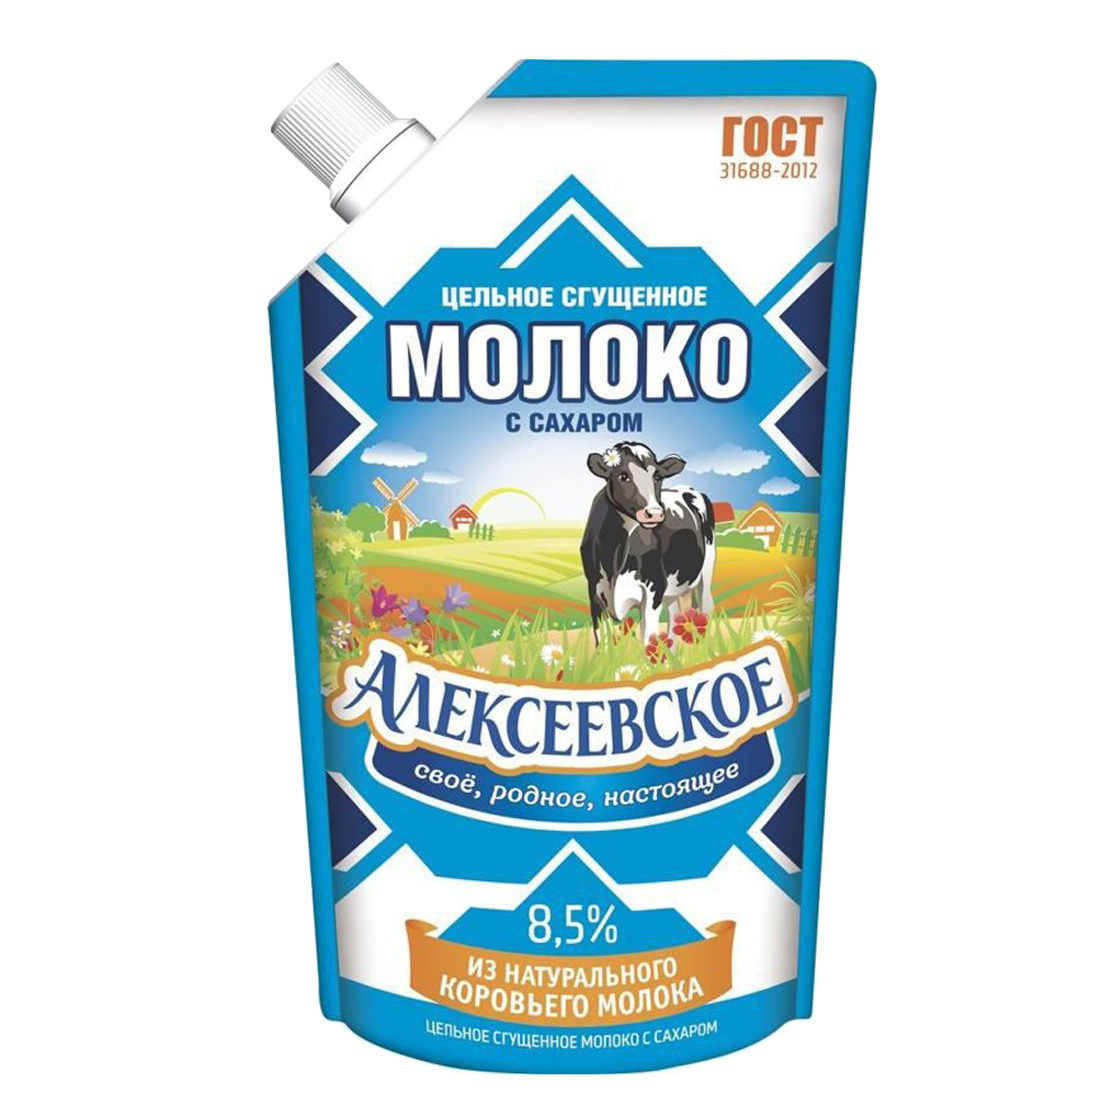 Молоко сгущенное Алексеевское 8,5% 270 г молоко рогачевъ сгущенное вареное егорка 8 5% 360 г